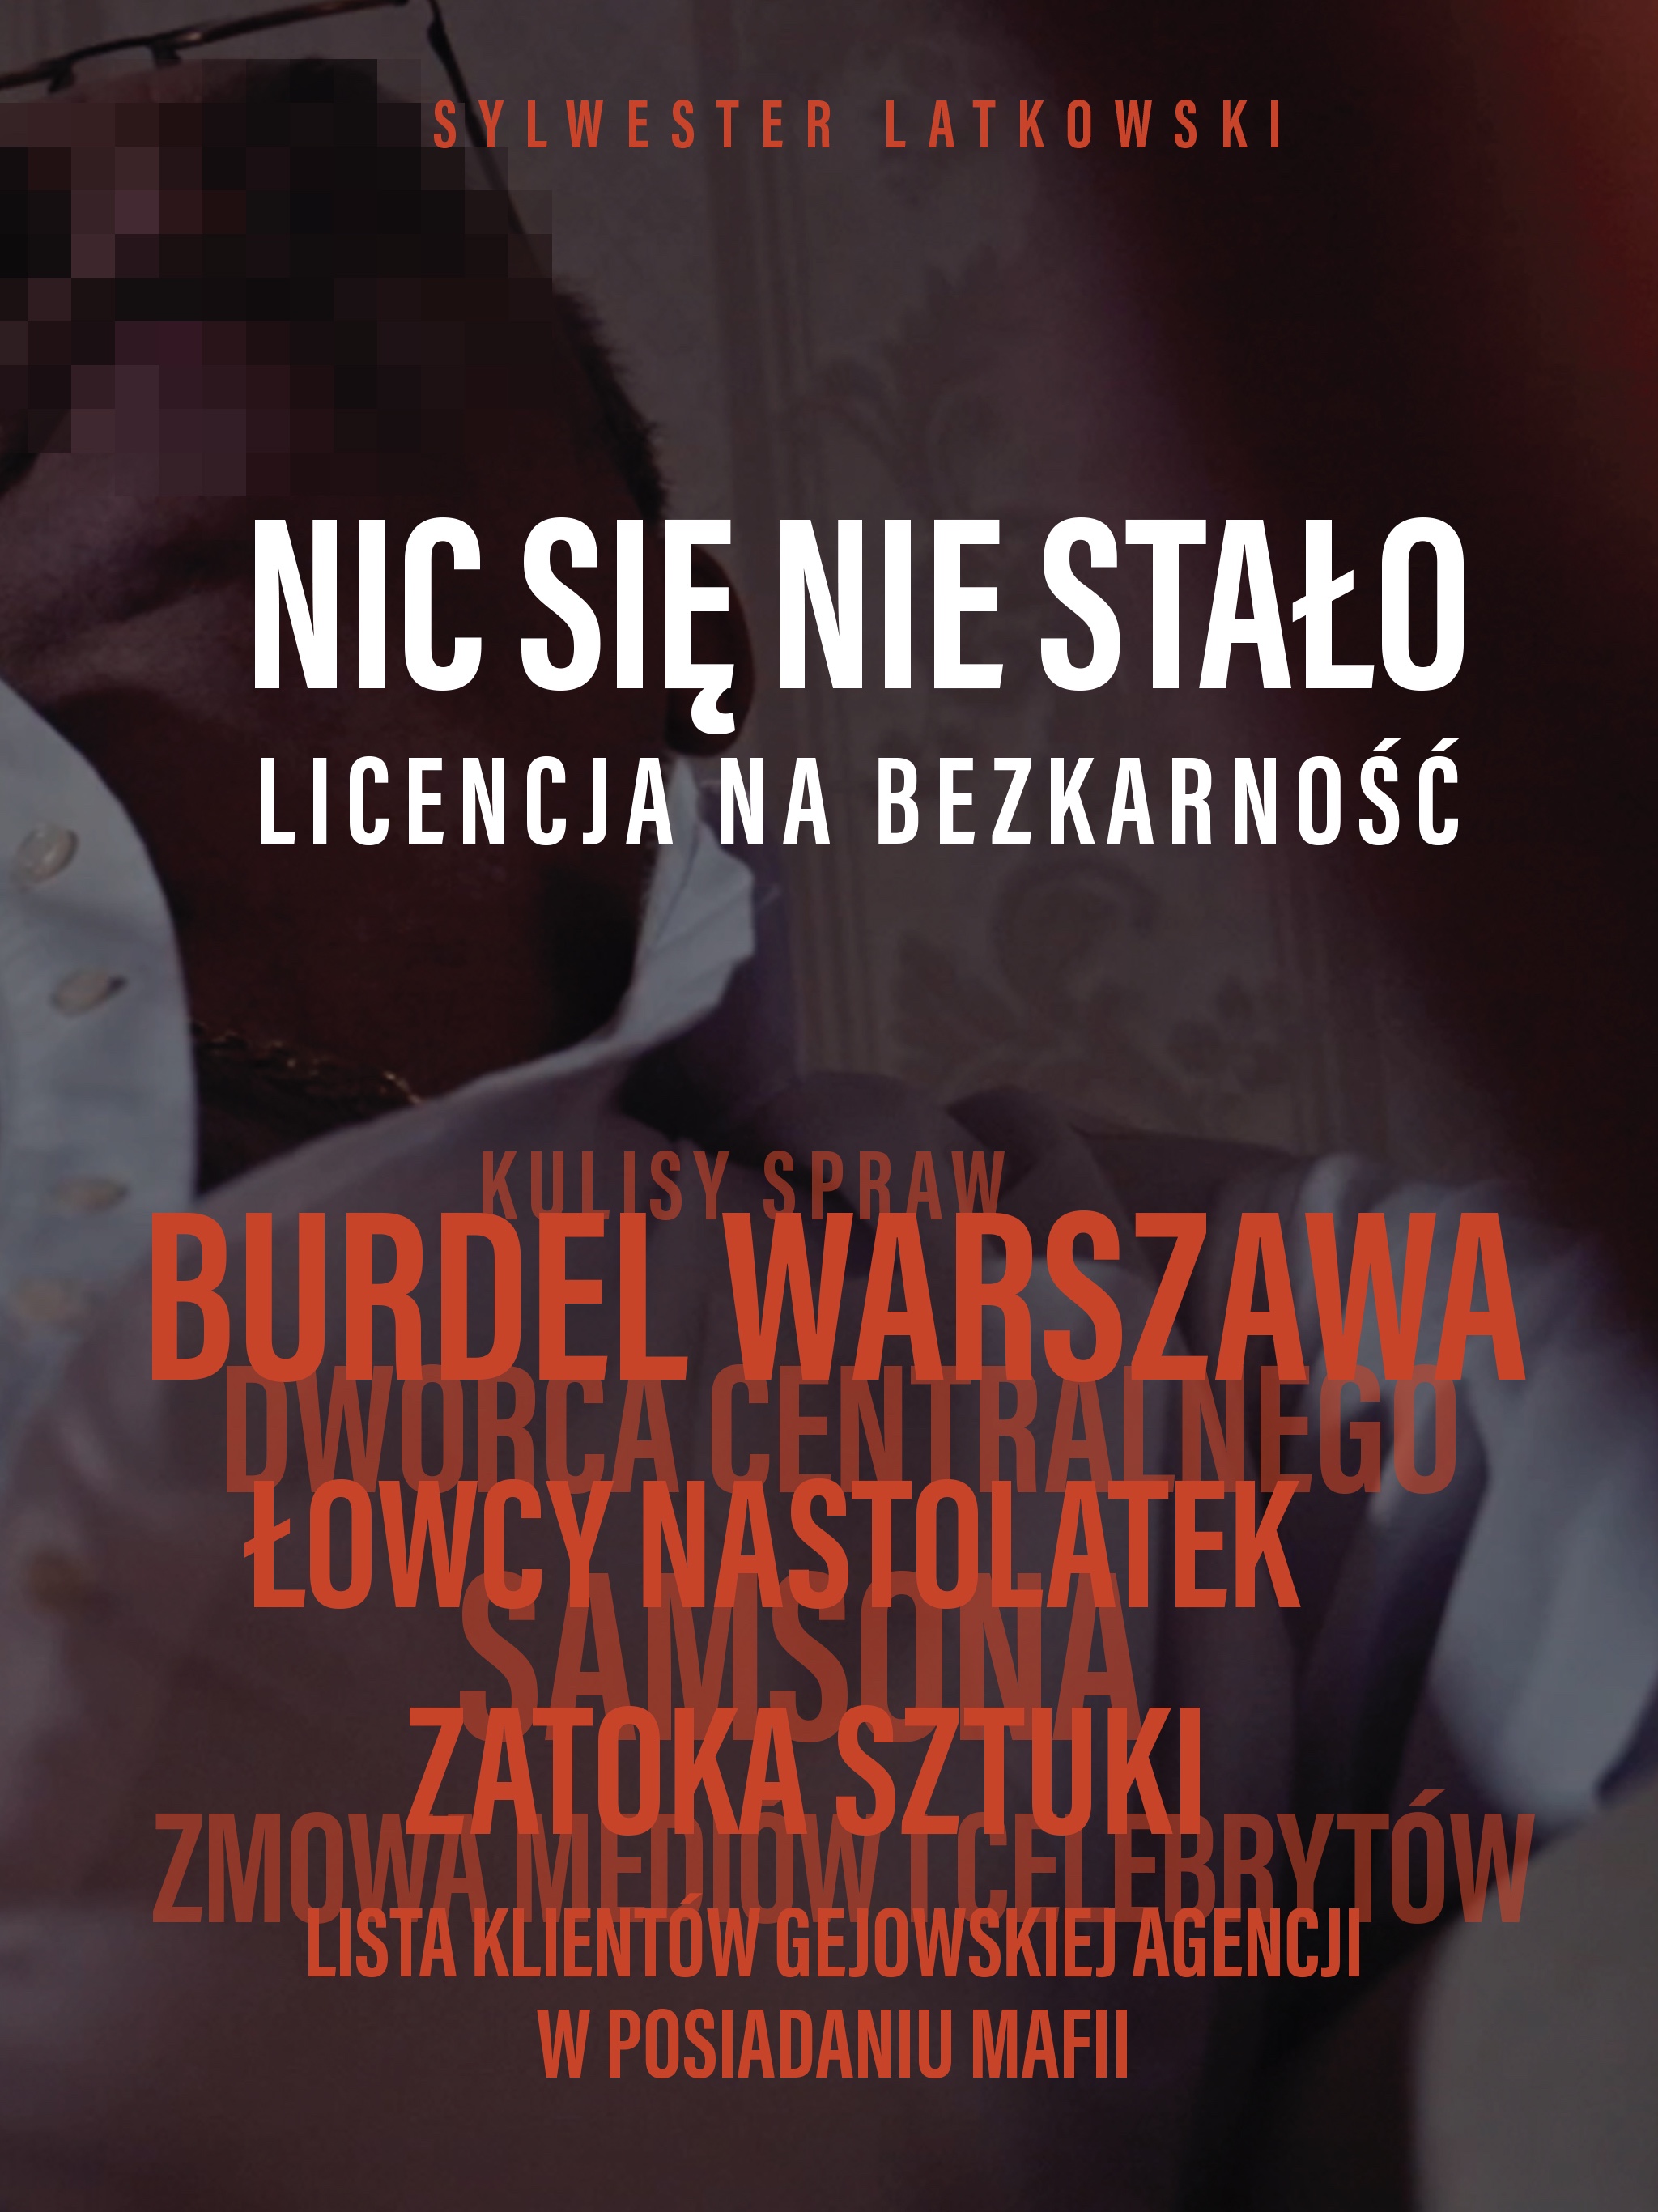 Iwona-Wieczorek-Latkowski.jpg